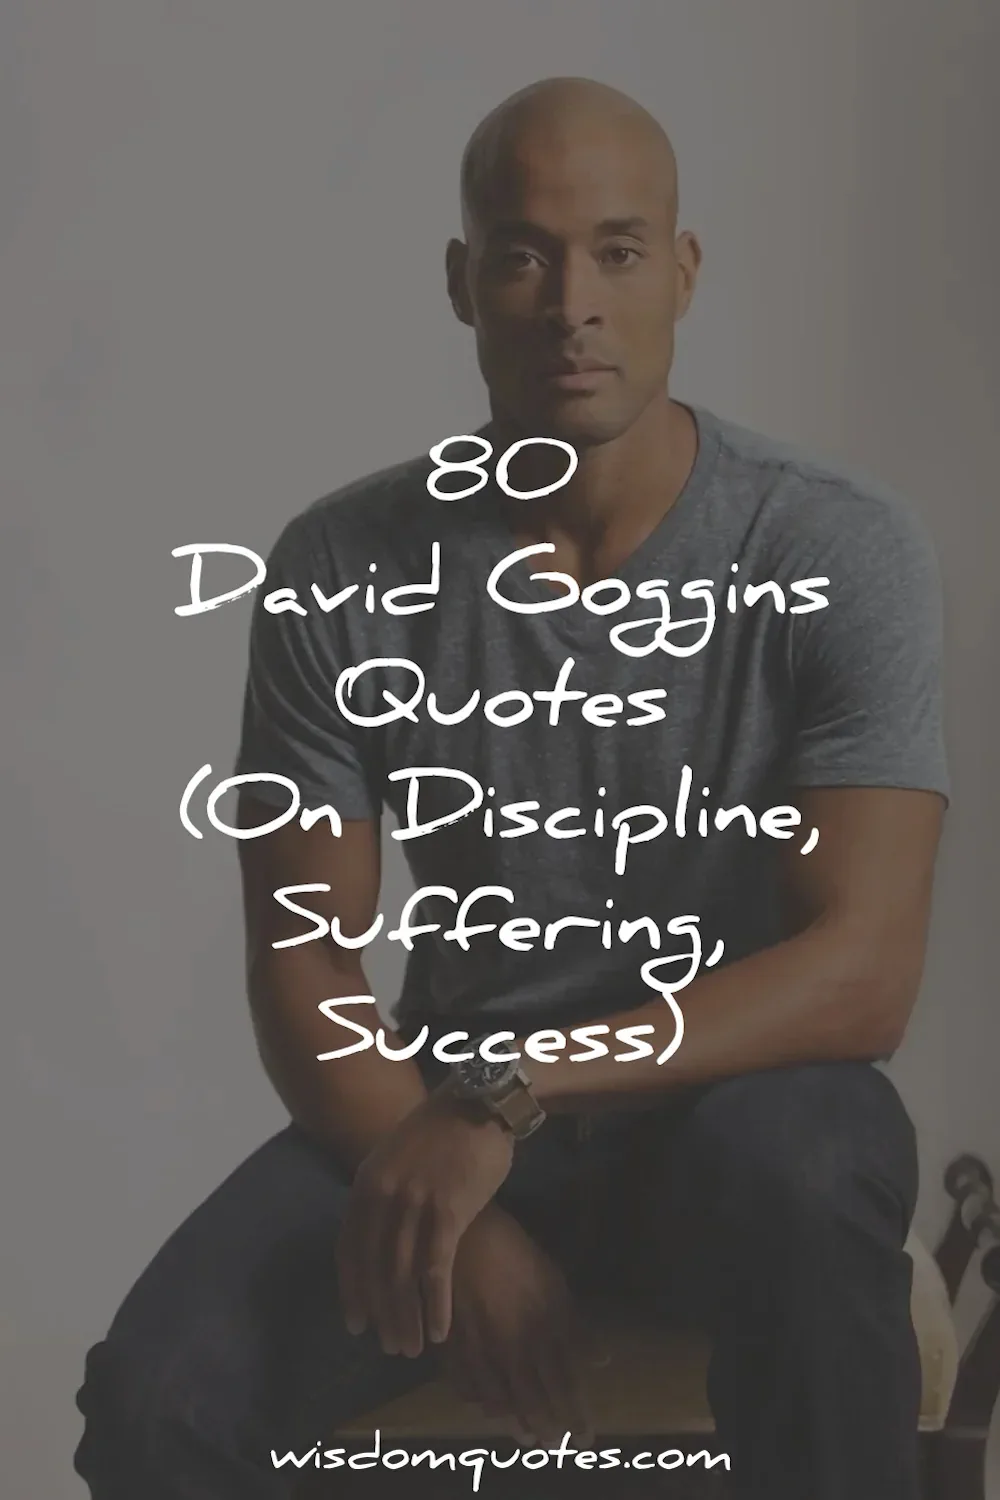 david goggins quotes disciplines suffering success